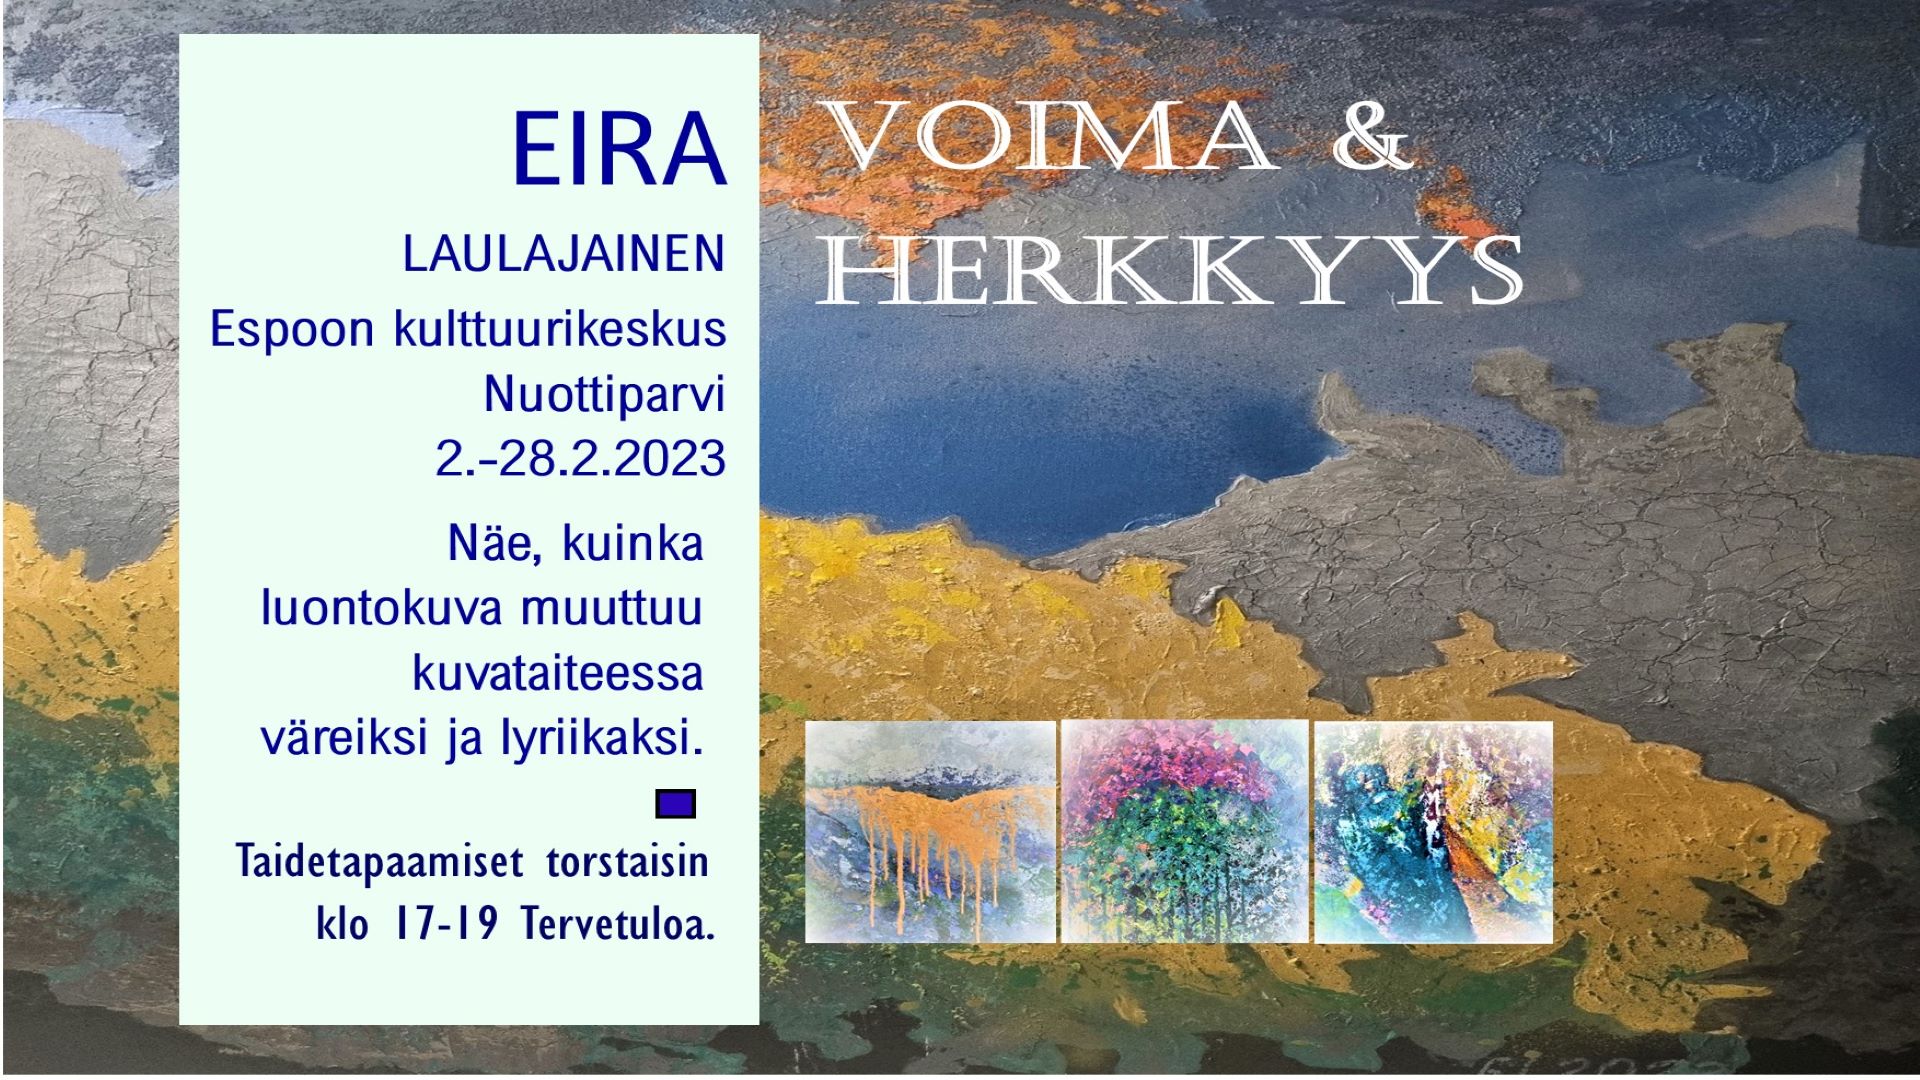 Eira Laulajainen Voima & Herkkyys -näyttely.